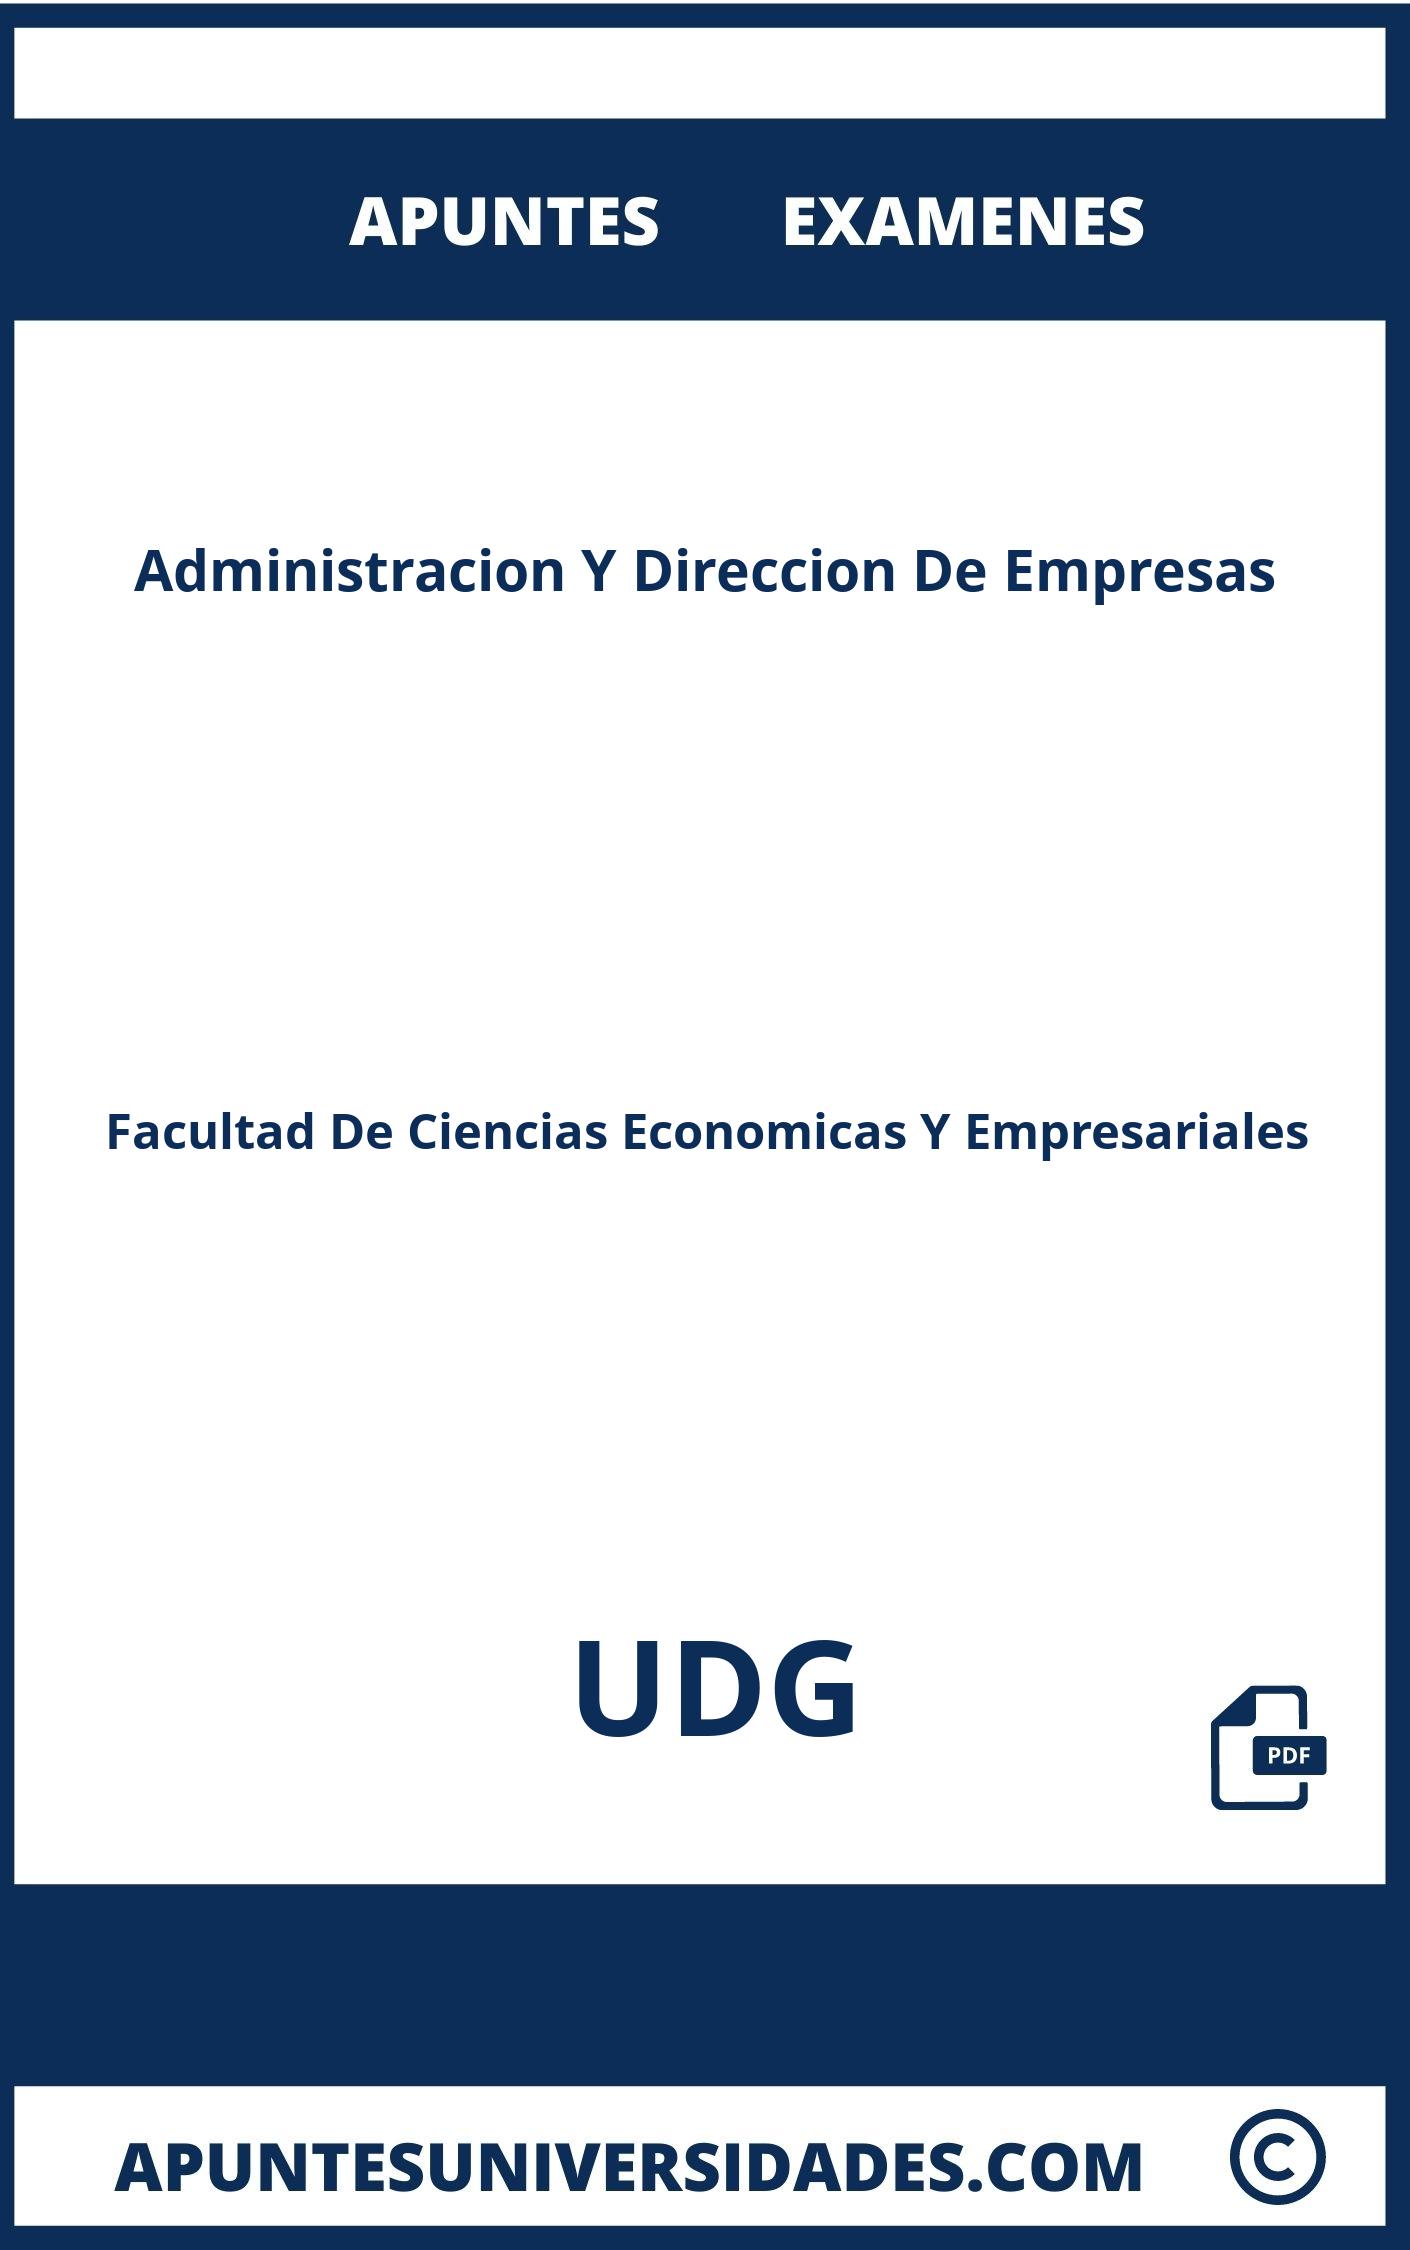 Examenes y Apuntes de Administracion Y Direccion De Empresas UDG